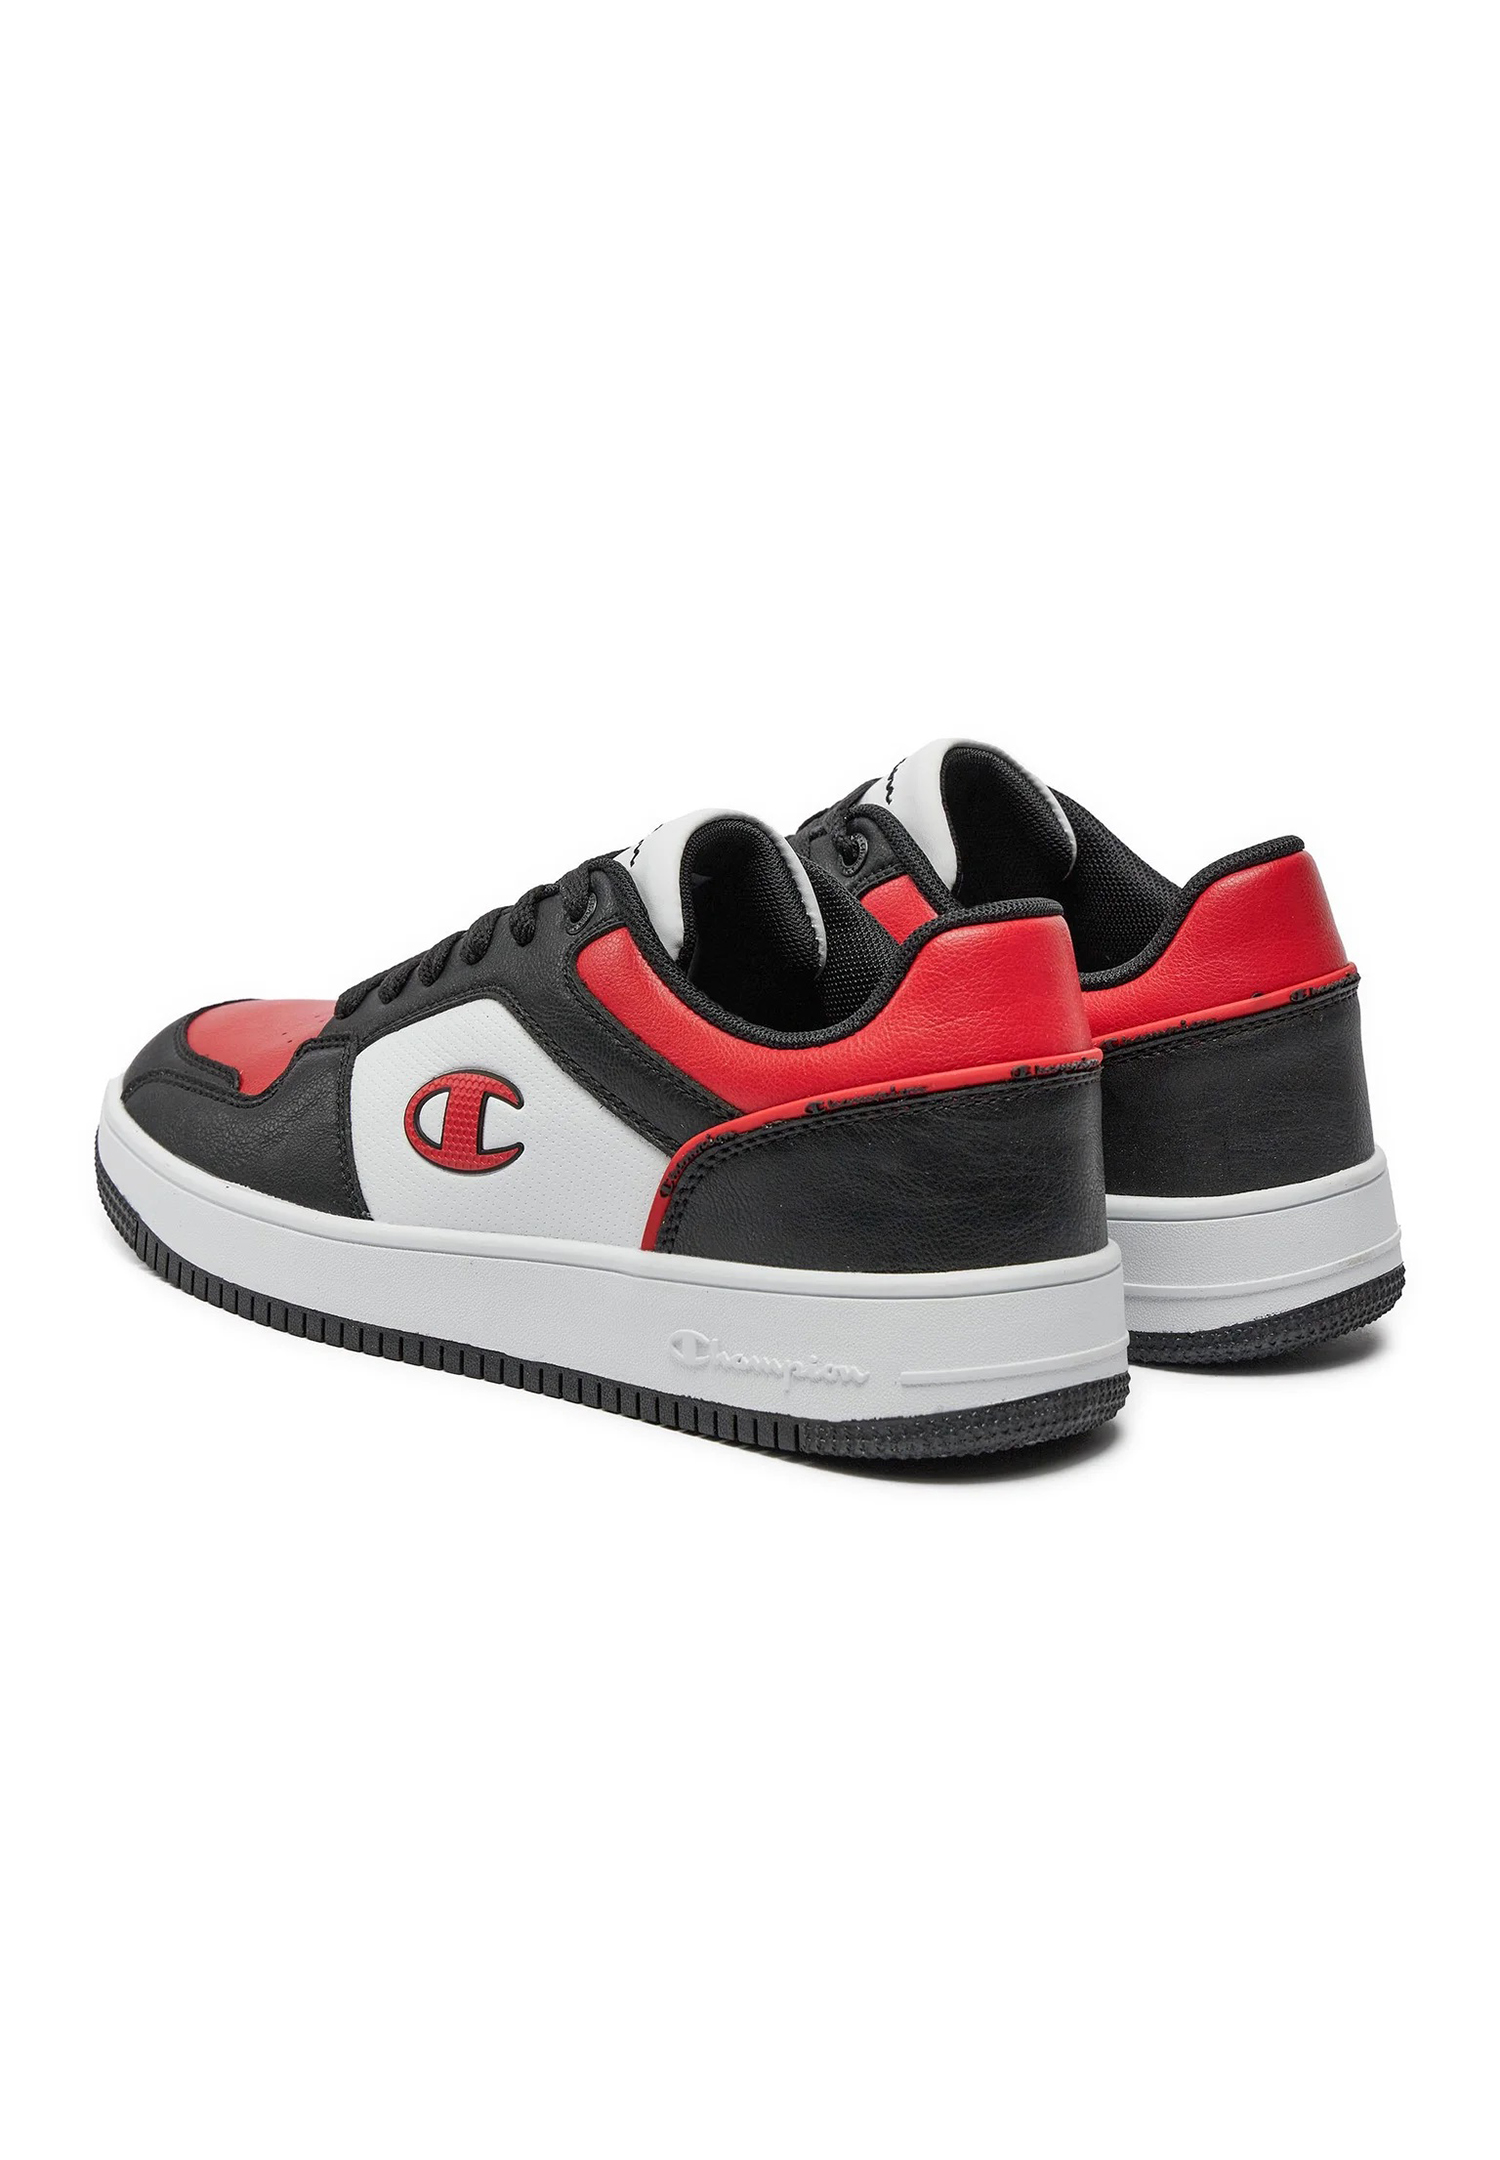 Champion REBOUND 2.0 LOW Herren Sneaker S21906-CHA-KK019 schwarz/rot/weiß